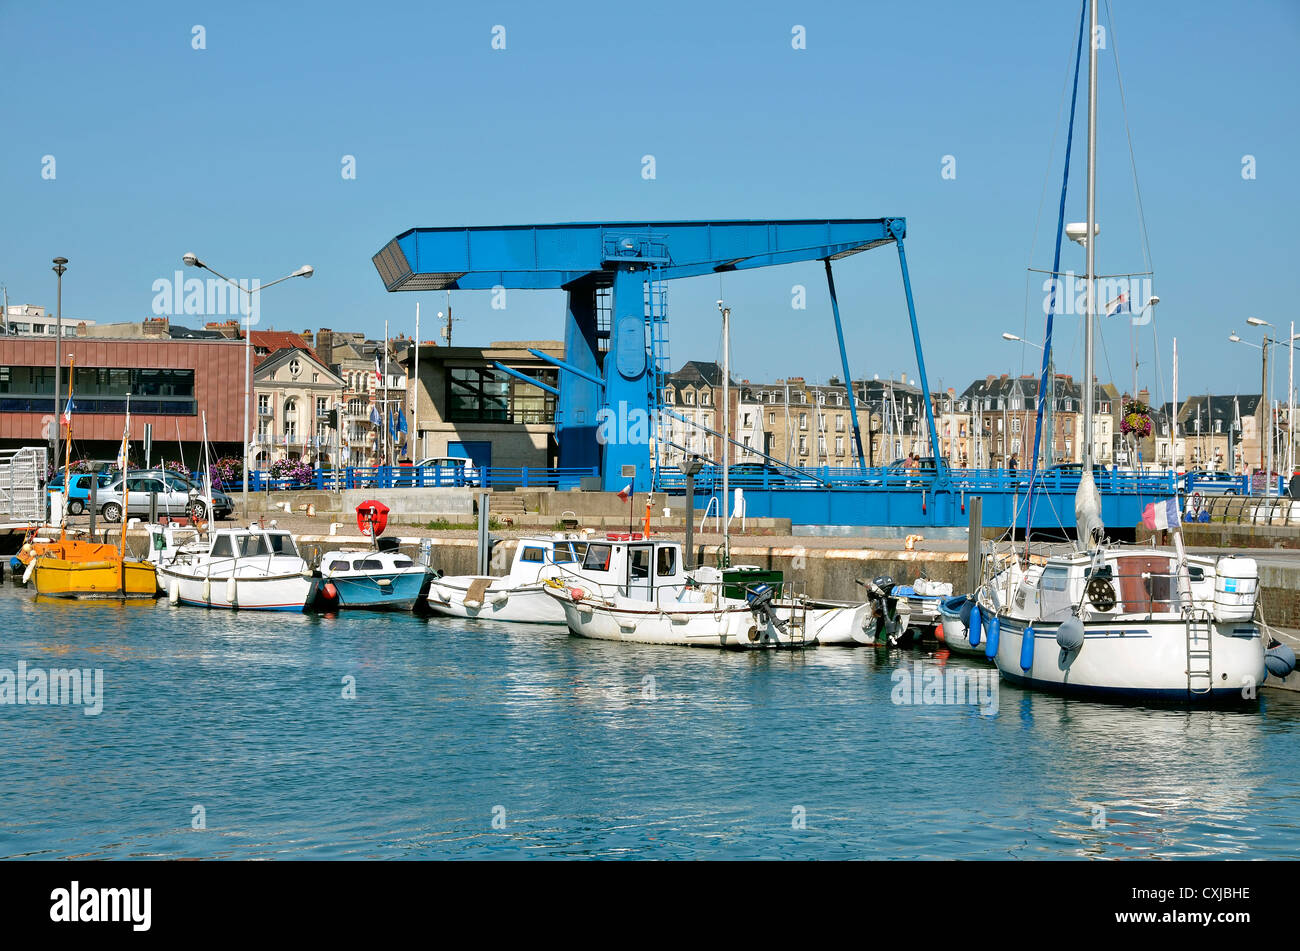 Hafen von Dieppe, Gemeinde im Département Seine-Maritime in der Region Haute-Normandie im Nordwesten Frankreichs Stockfoto